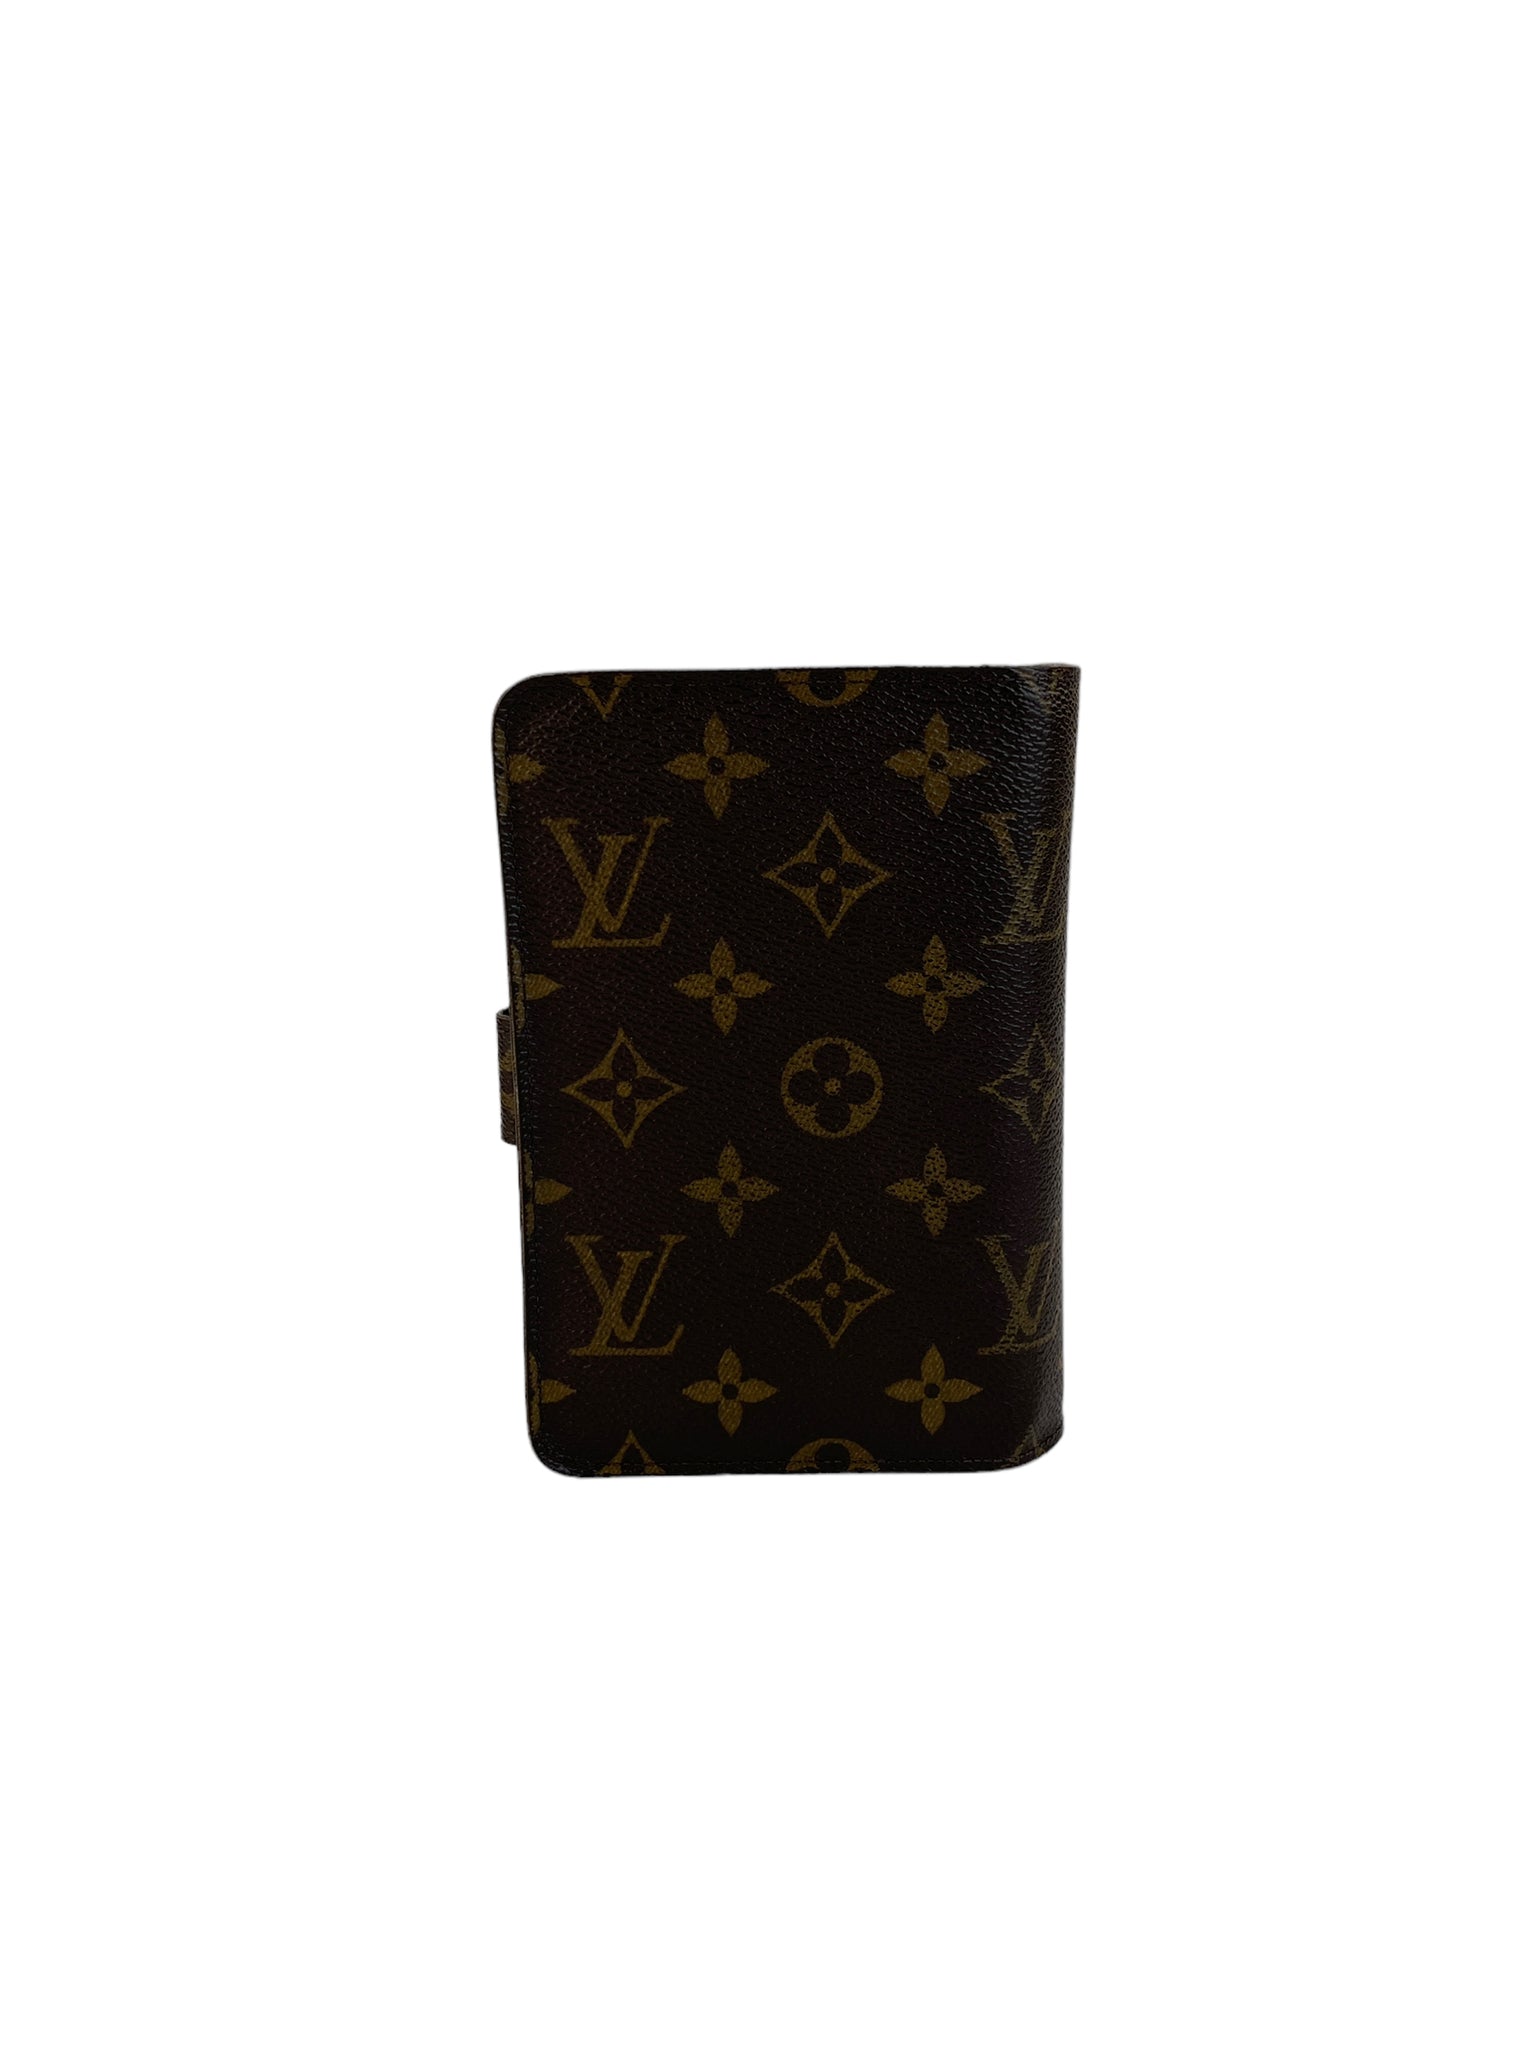 Authentic Louis Vuitton Monogram Porte Papier Zippy Wallet